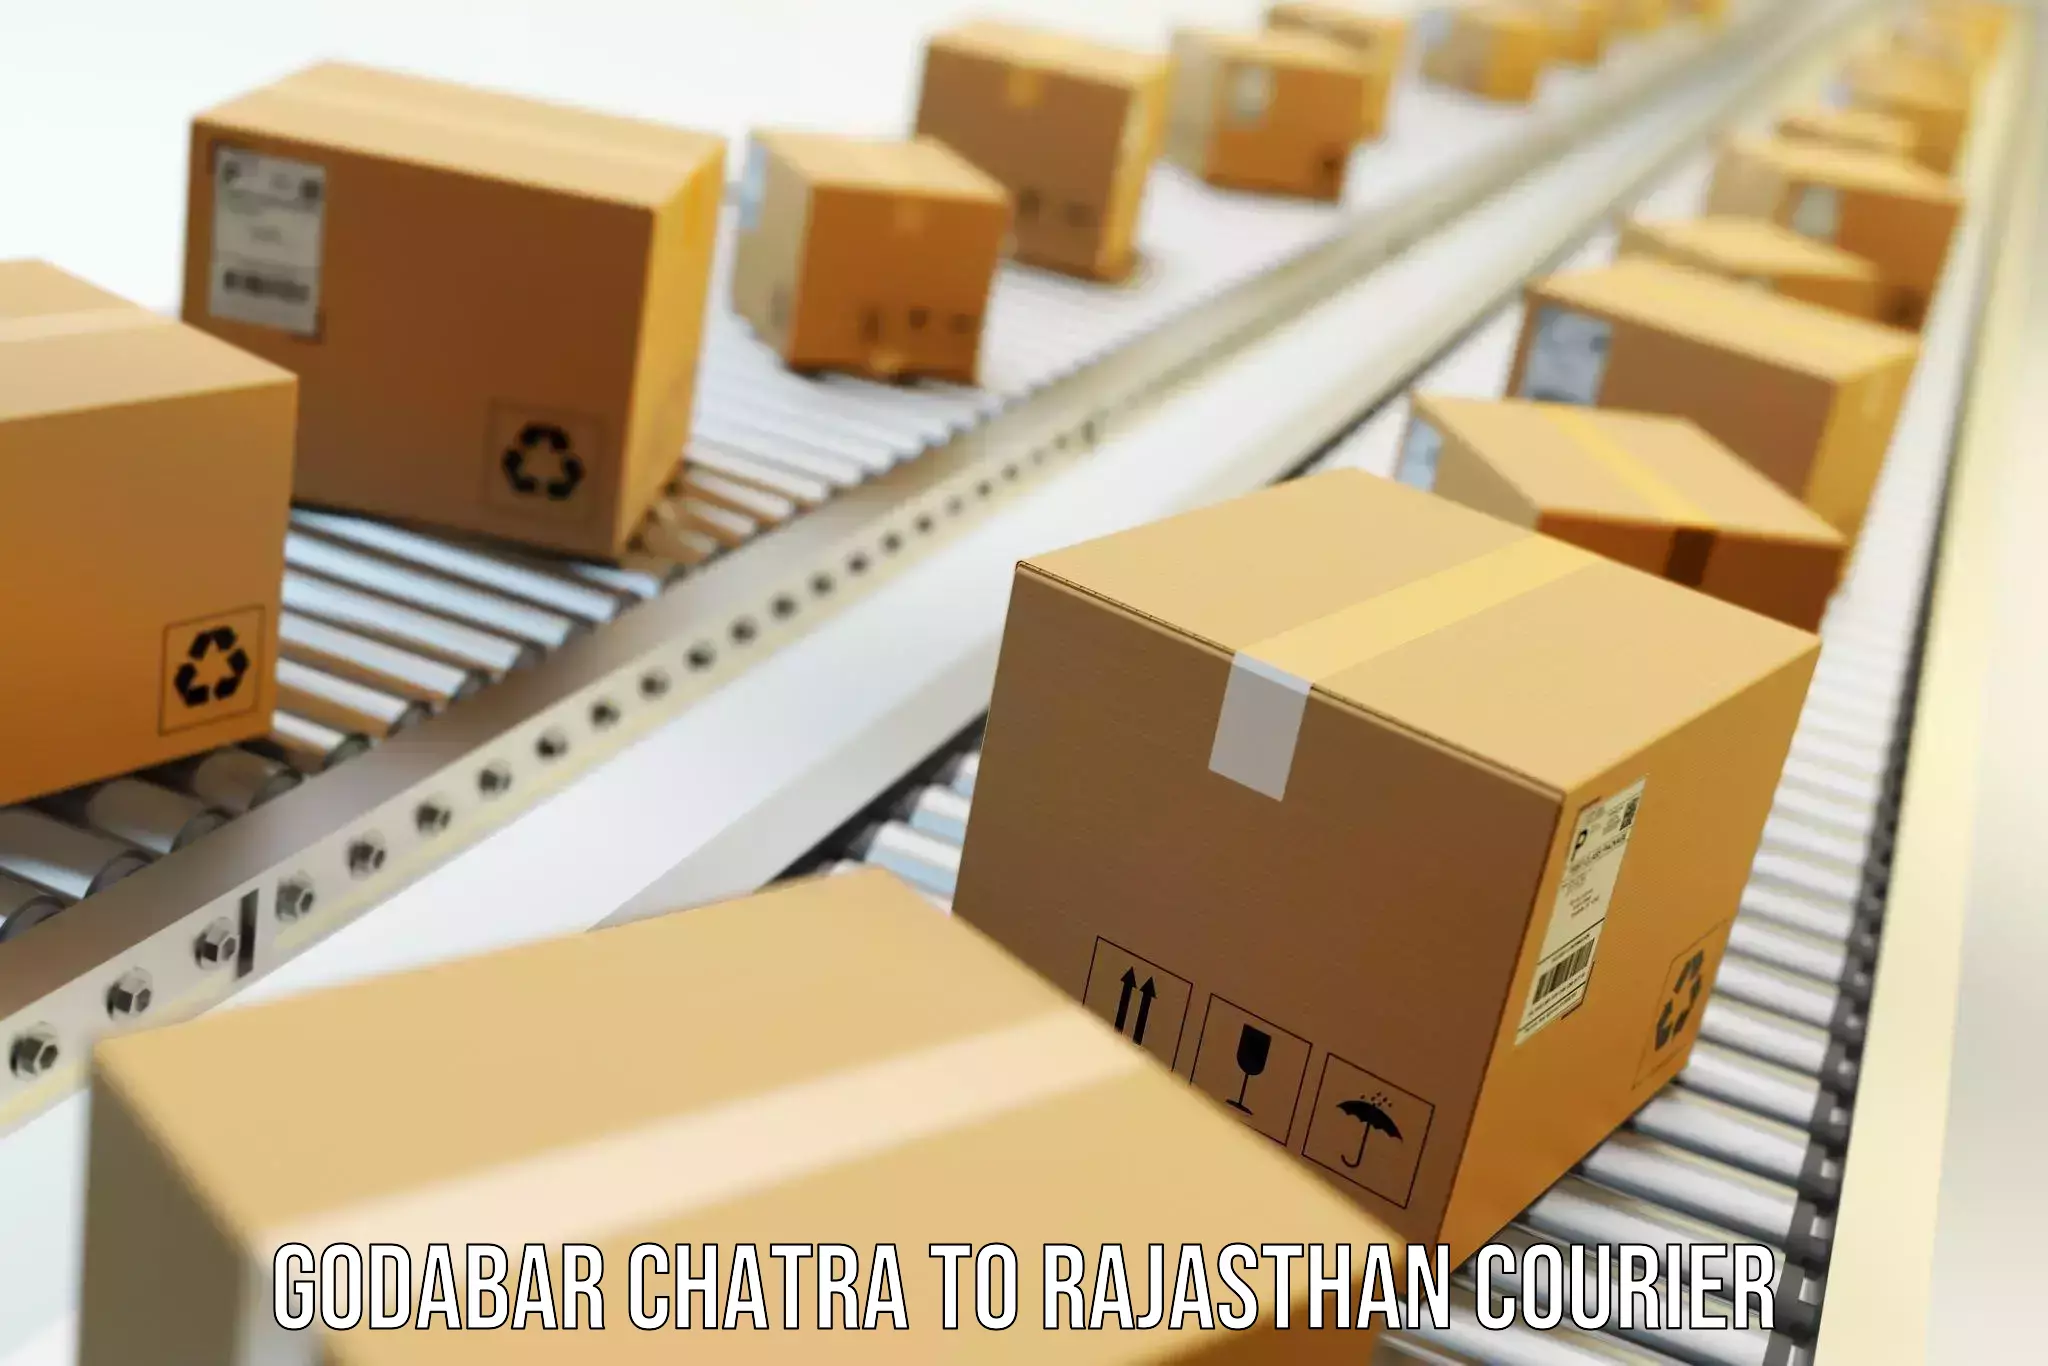 Specialized moving company Godabar Chatra to Nohar